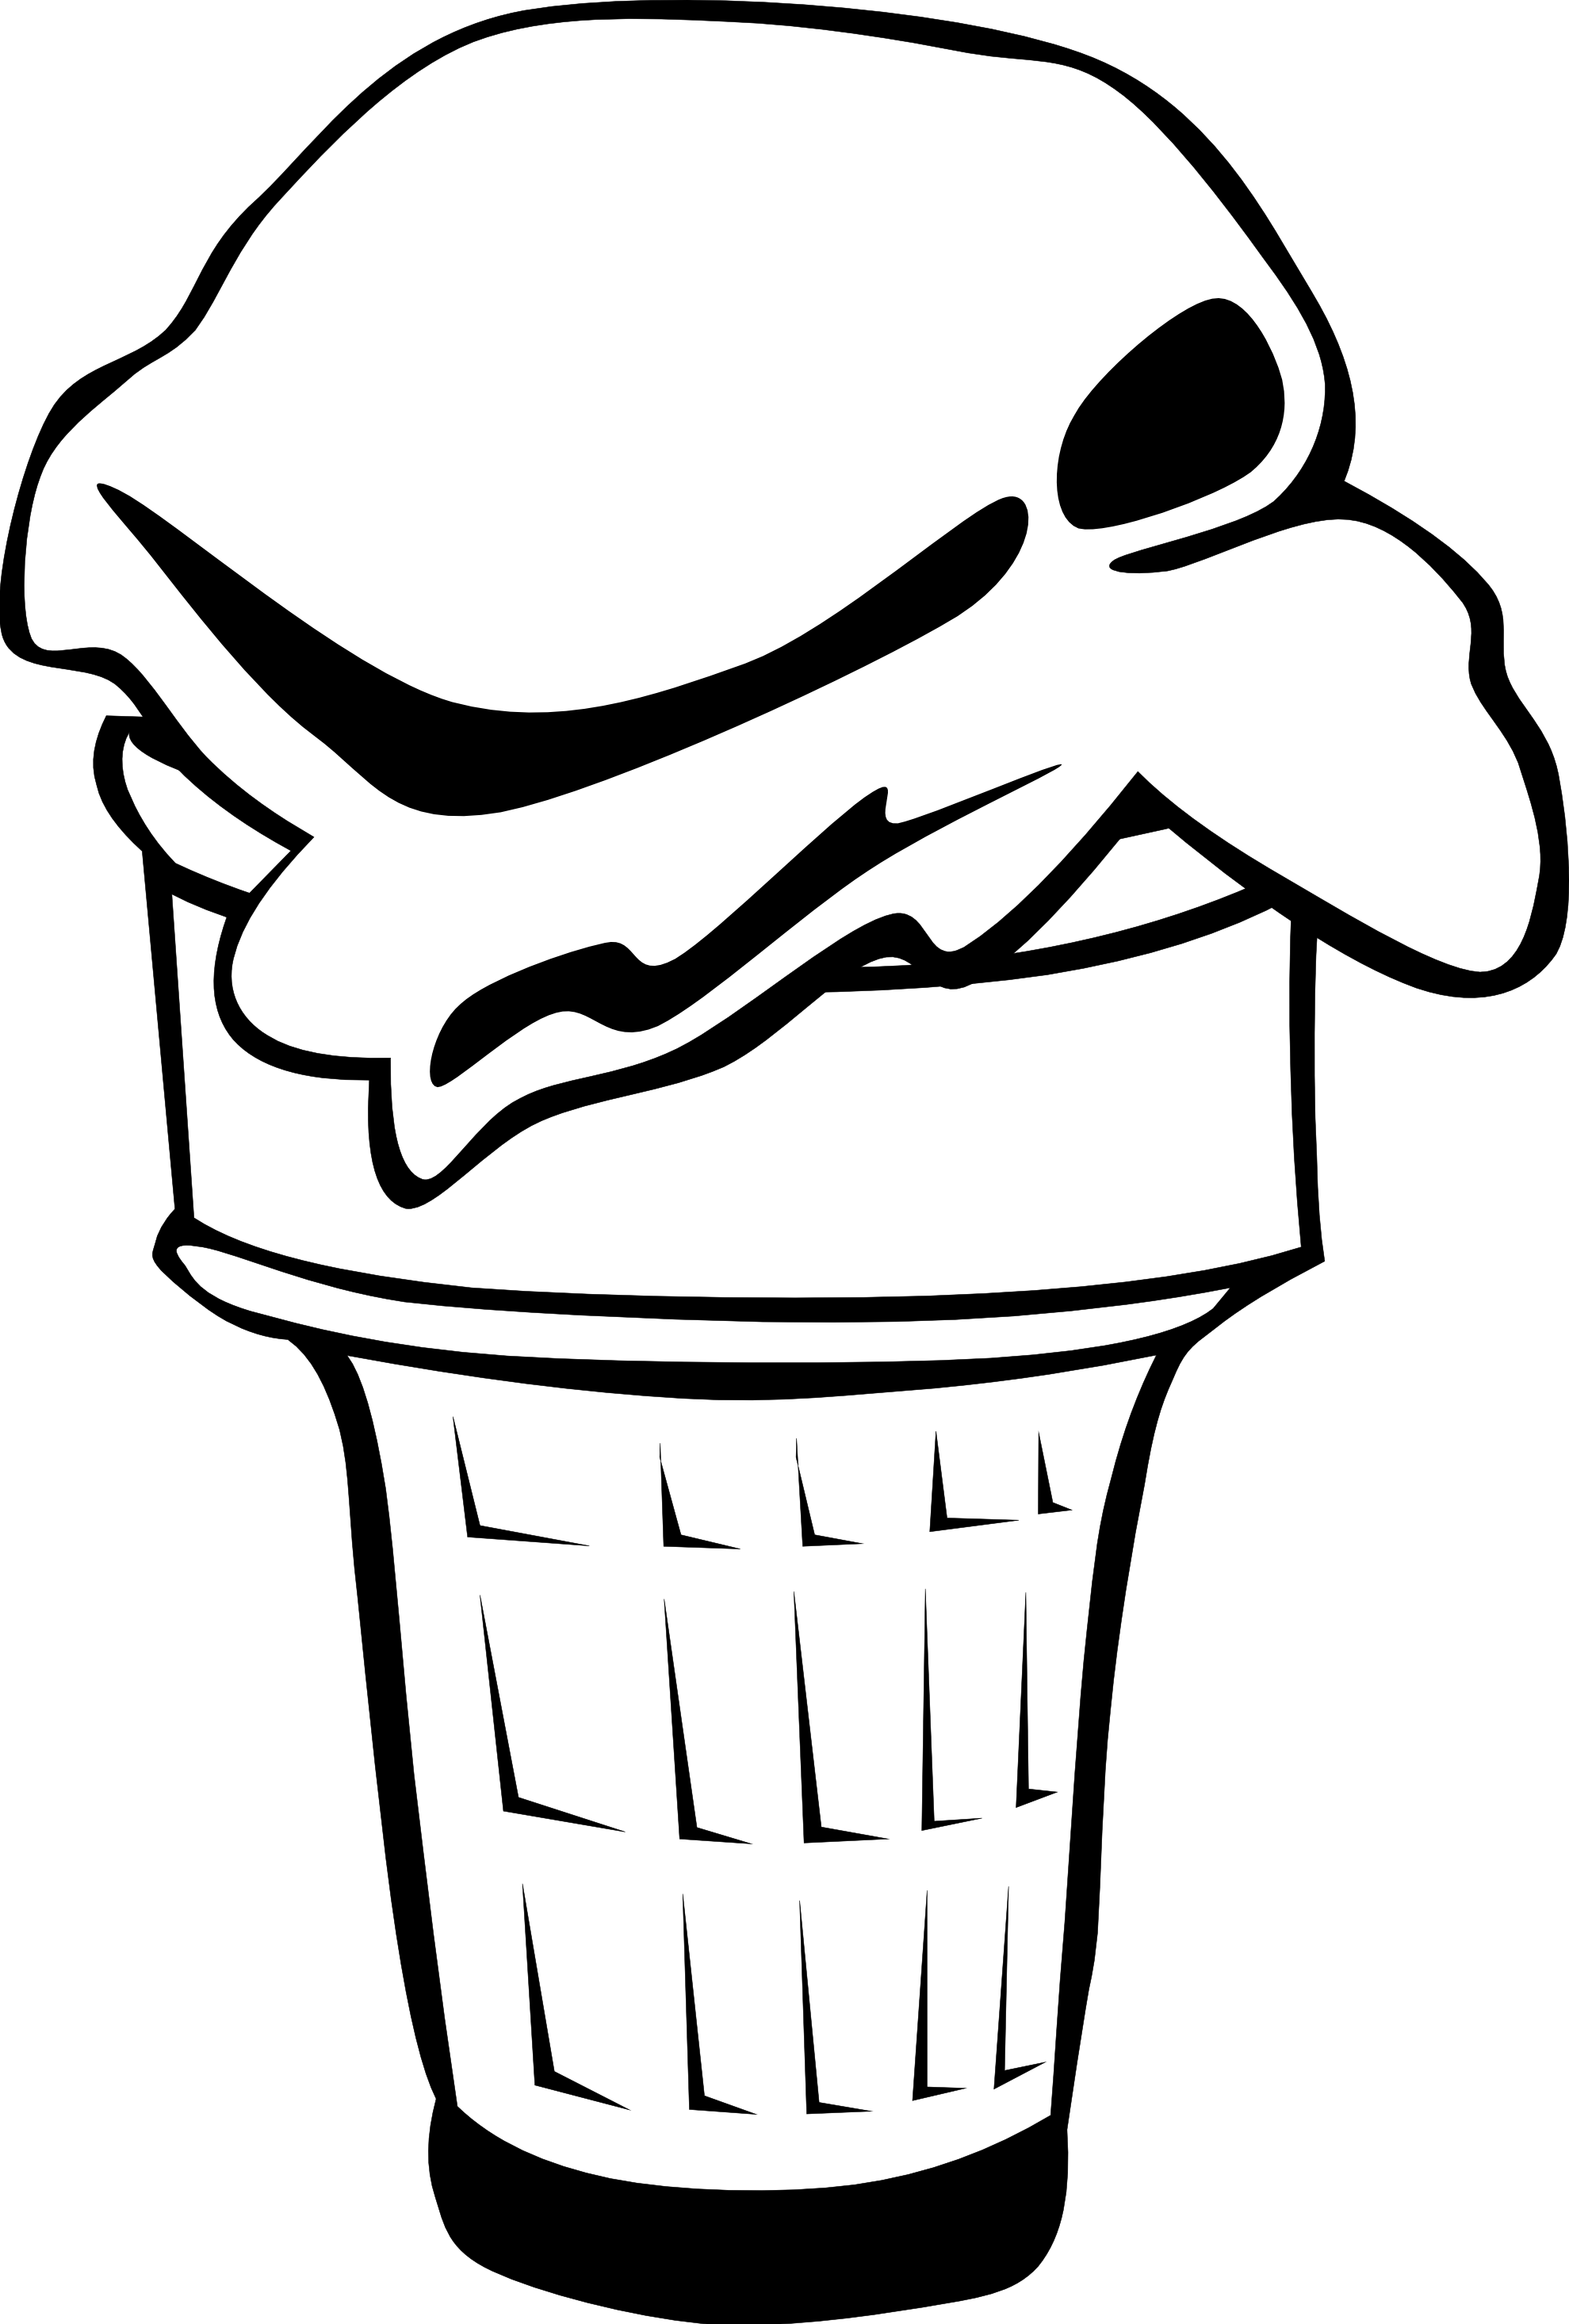 Black And White Ice Cream Cone Clipart Ice Cream Cones Ff Menu 3 Black